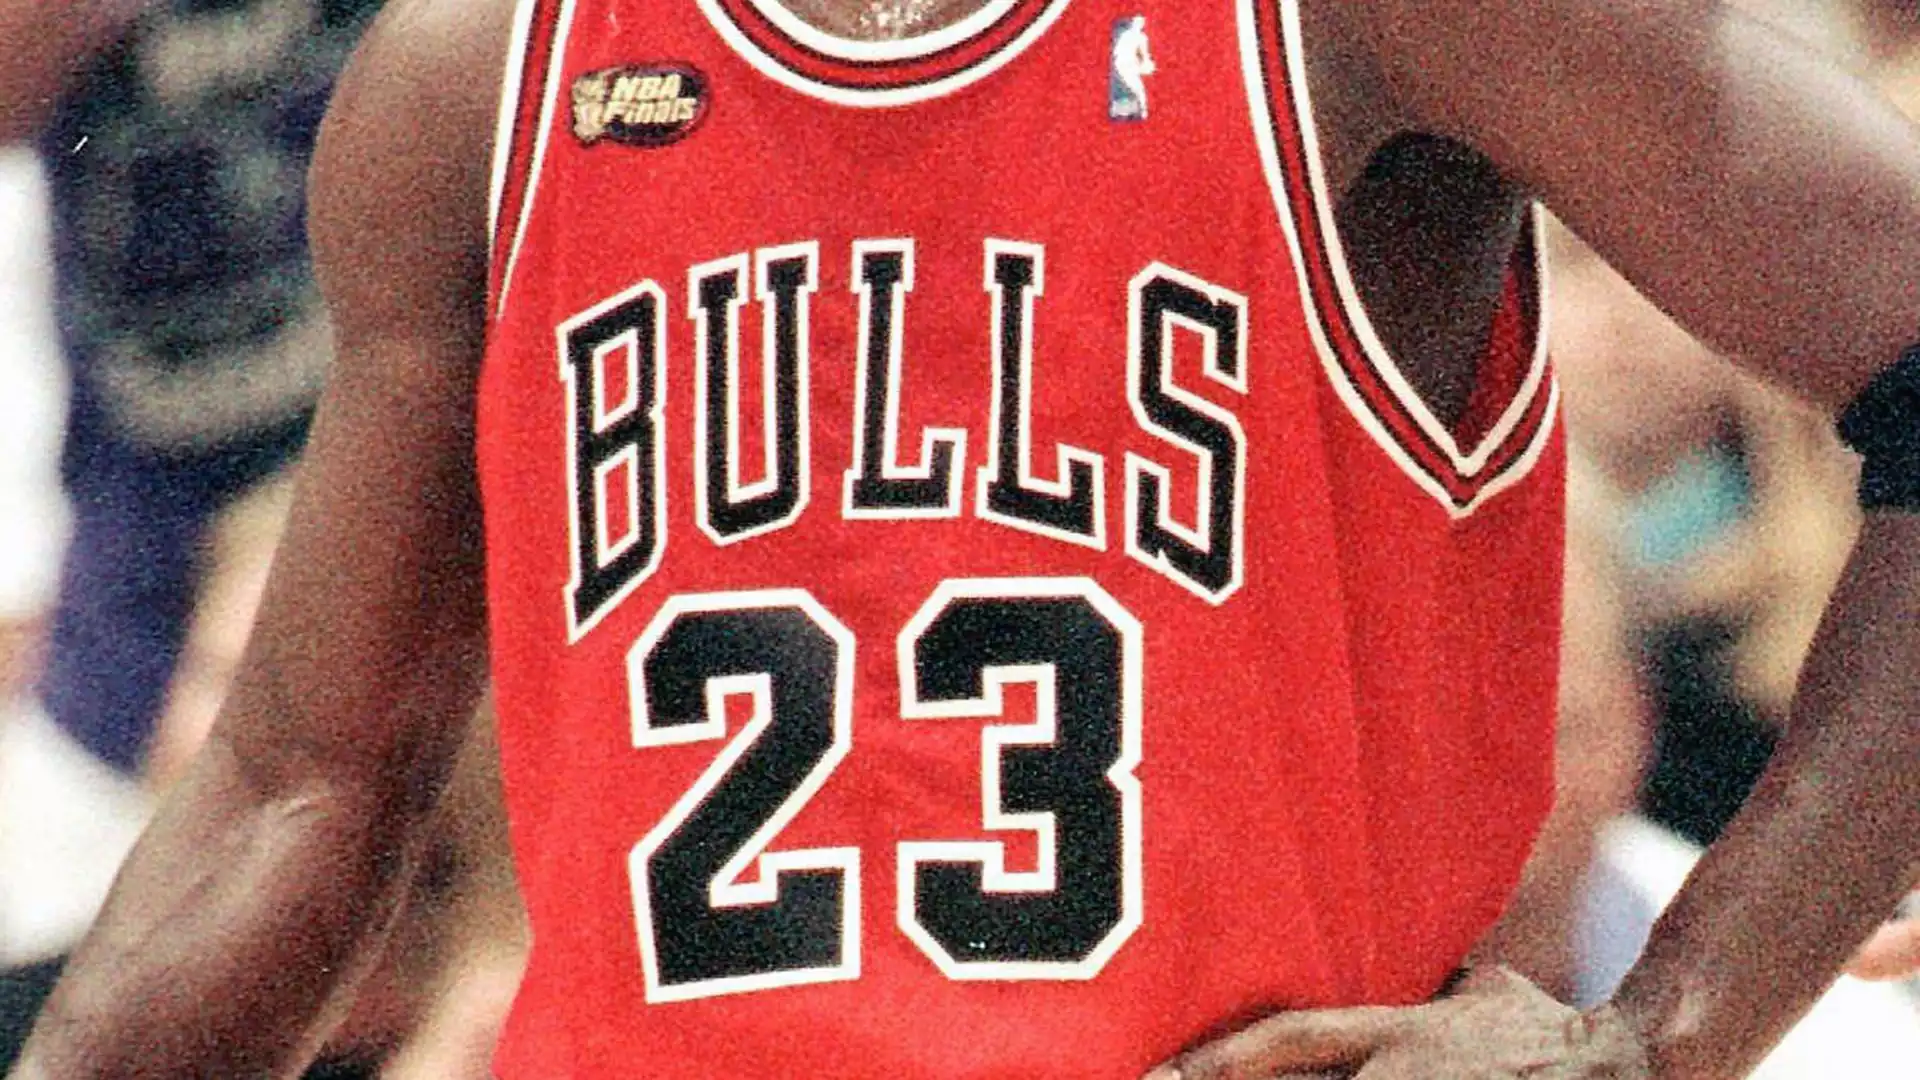 ll precedente primato relato ad una maglia NBA era pari a 3,69 milioni di dollari, pagato a maggio 2021 per quella indossata da Kobe Bryant durante la sua stagione da rookie (1996-97).